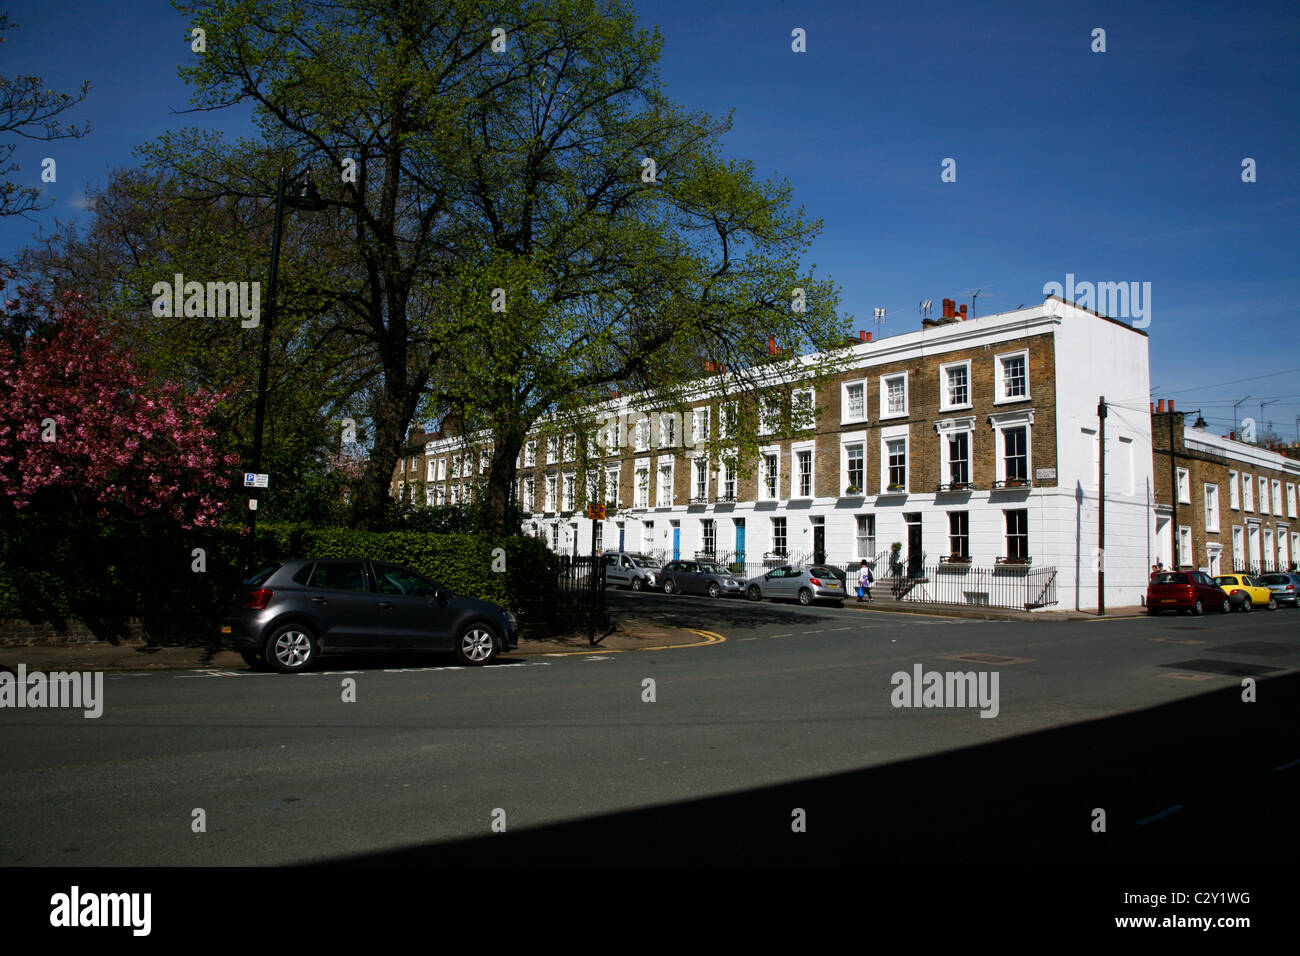 Arlington Square in Islington, London, UK Stockfoto